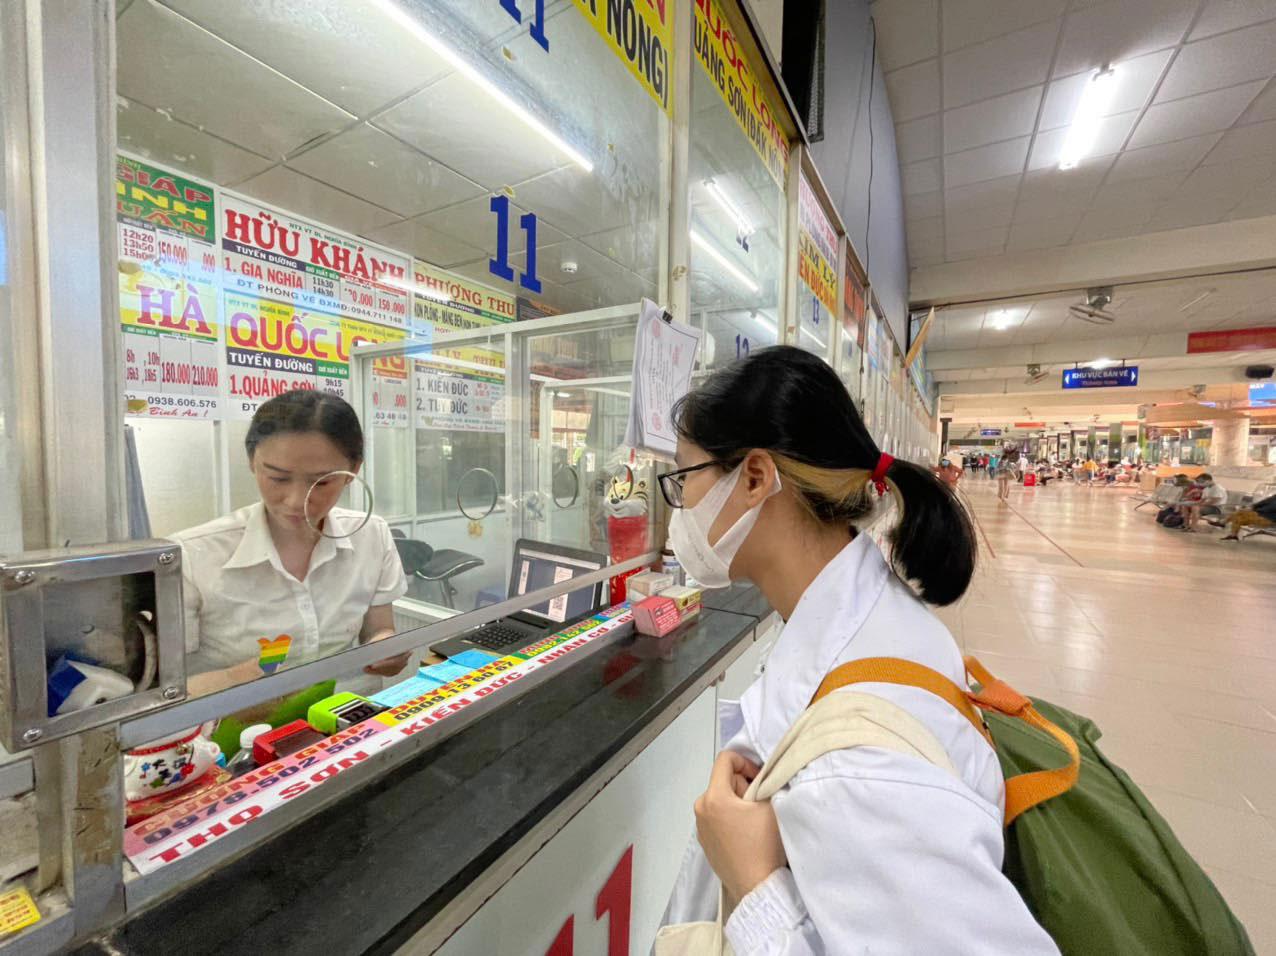 Nhiều hành khách gặp khó khi nhận vé điện tử tại Bến xe Miền Đông. Ảnh: Pháp luật TP.HCM